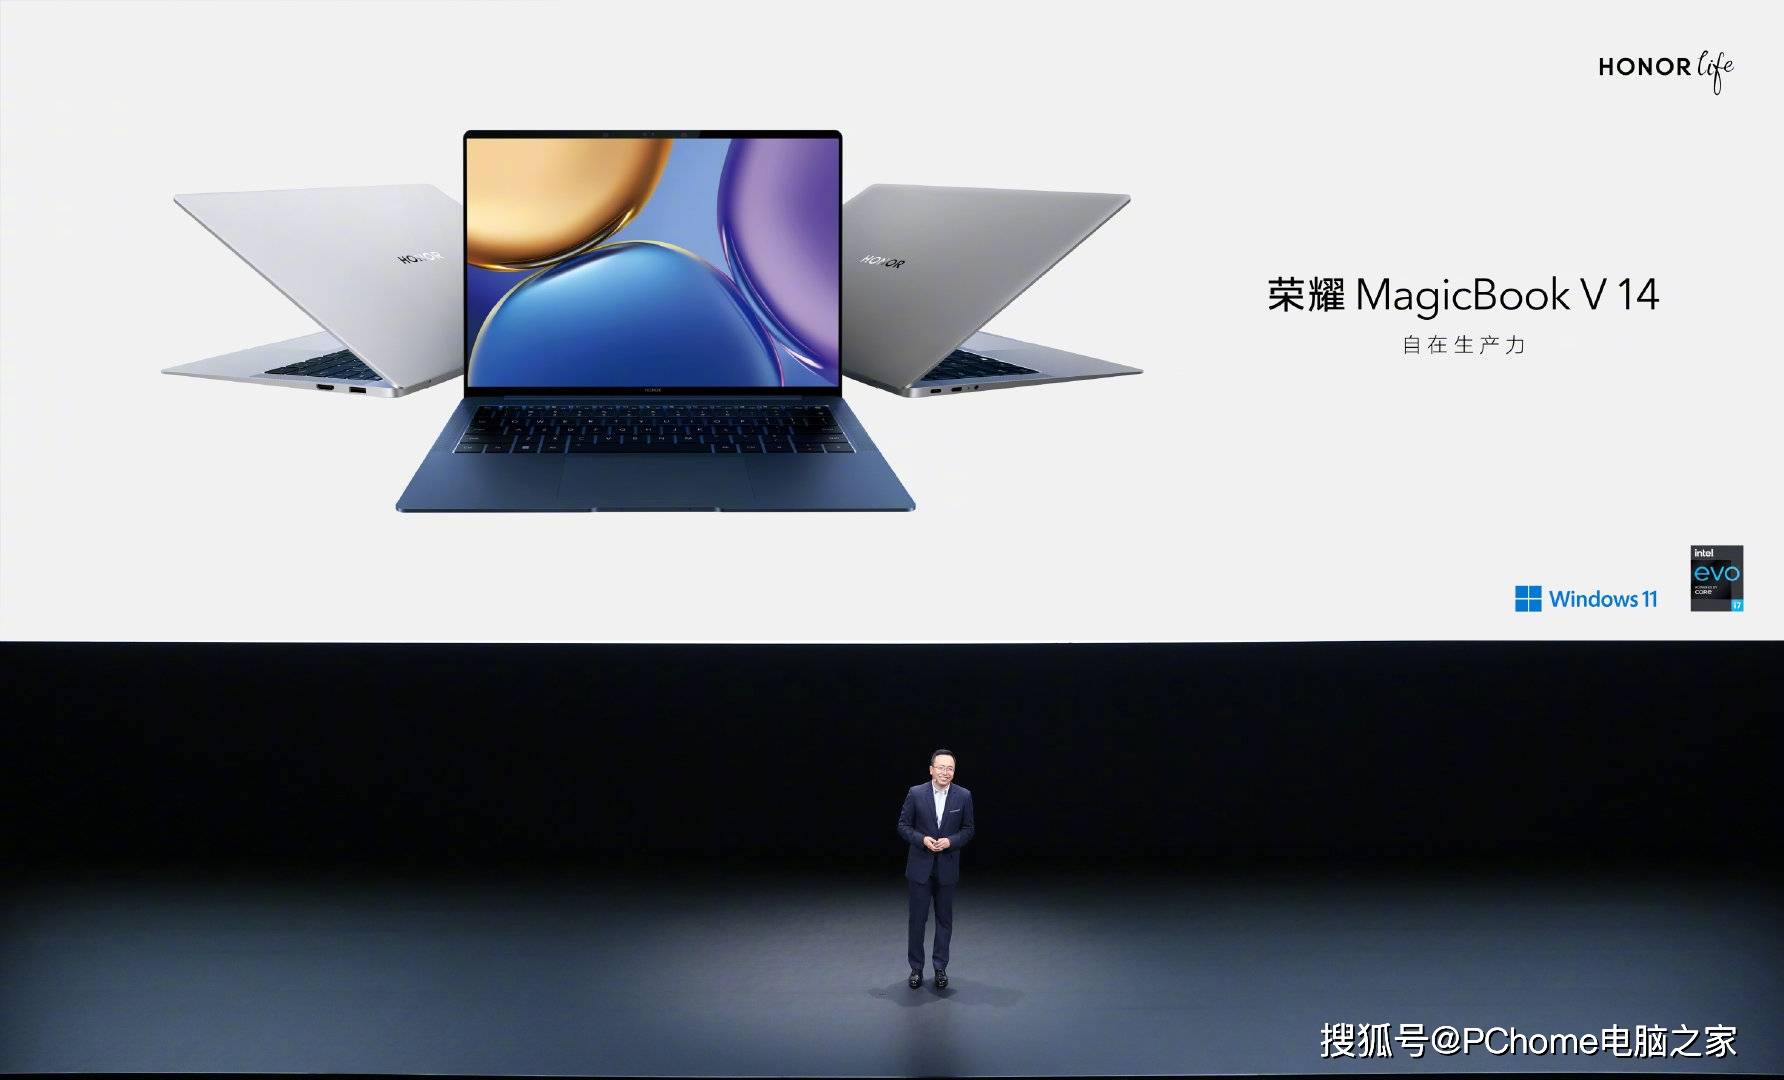 视频|Evo认证+首发Windows11 荣耀旗舰笔记本MagicBook V 14发布